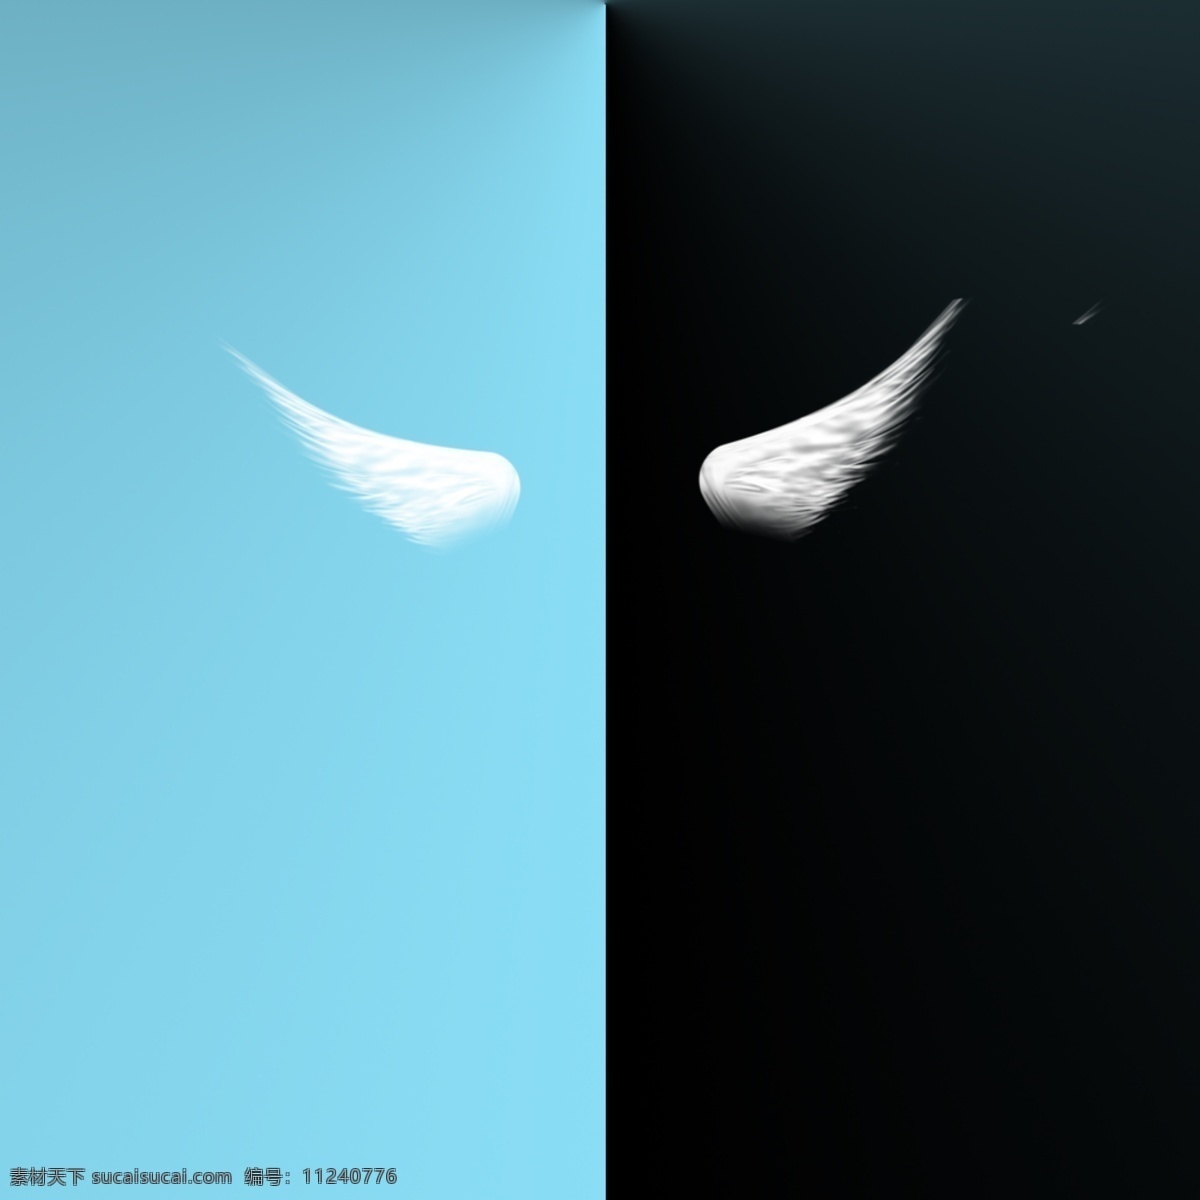 天使的翅膀 天使 翅膀 白色 白色翅膀 蓝色 黑色